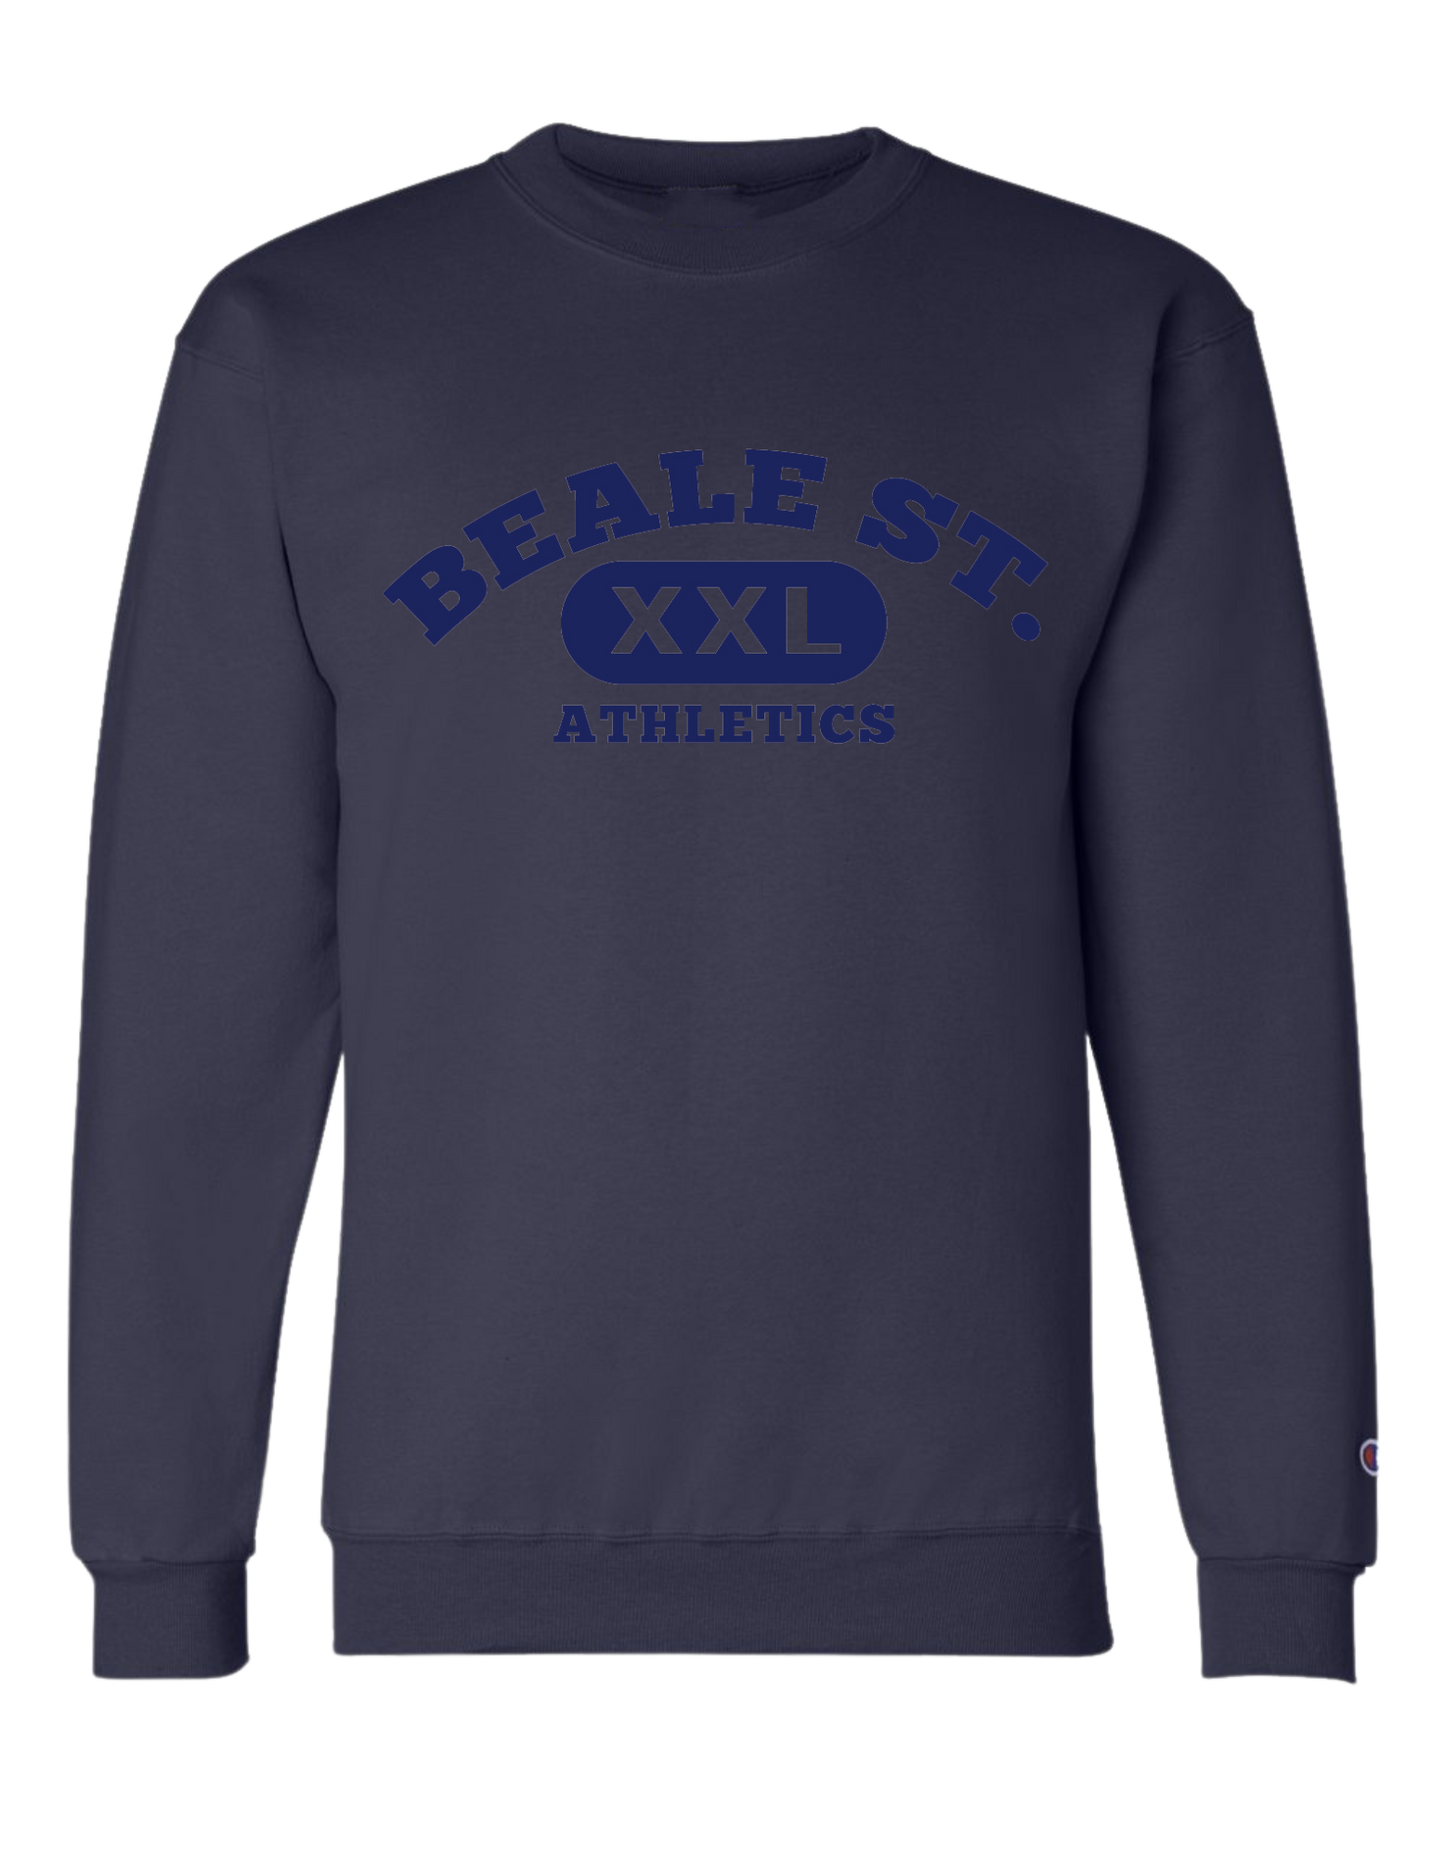 Beale Street Athletics Crew - Navy